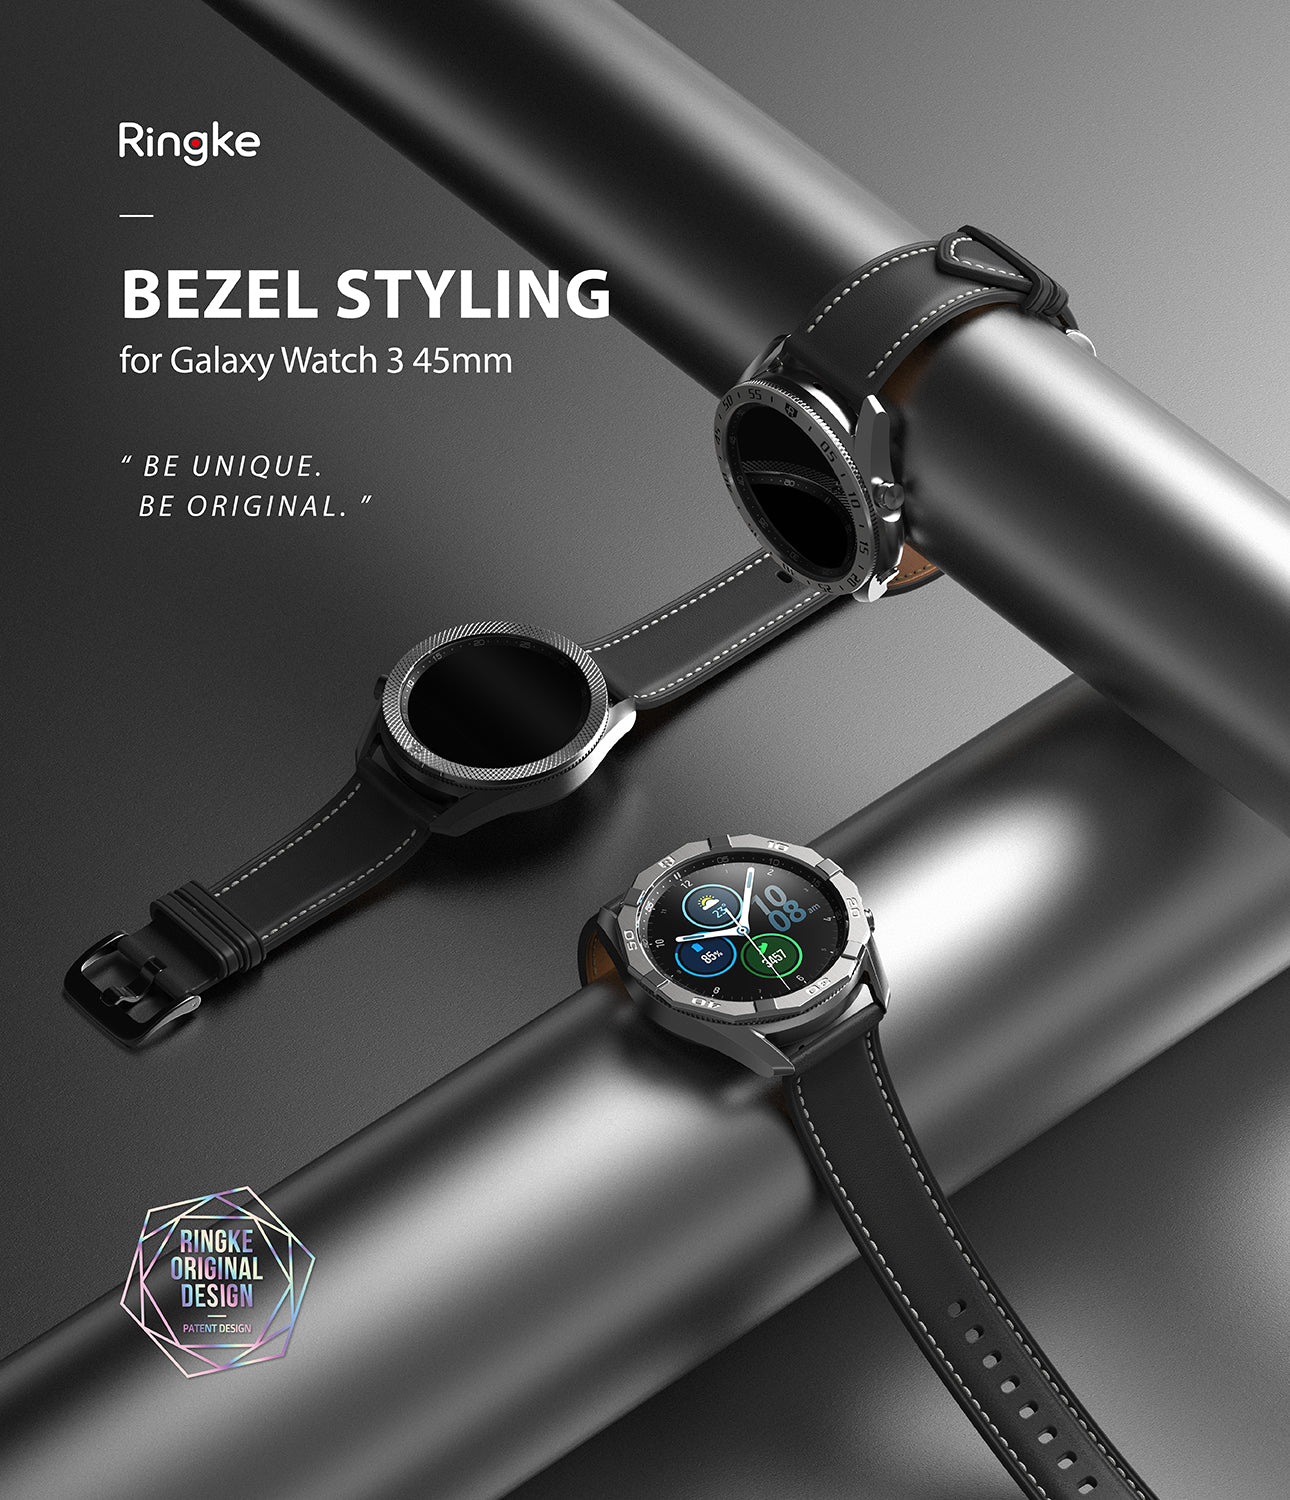 ringke bezel styling designed for galaxy watch 3 45mm